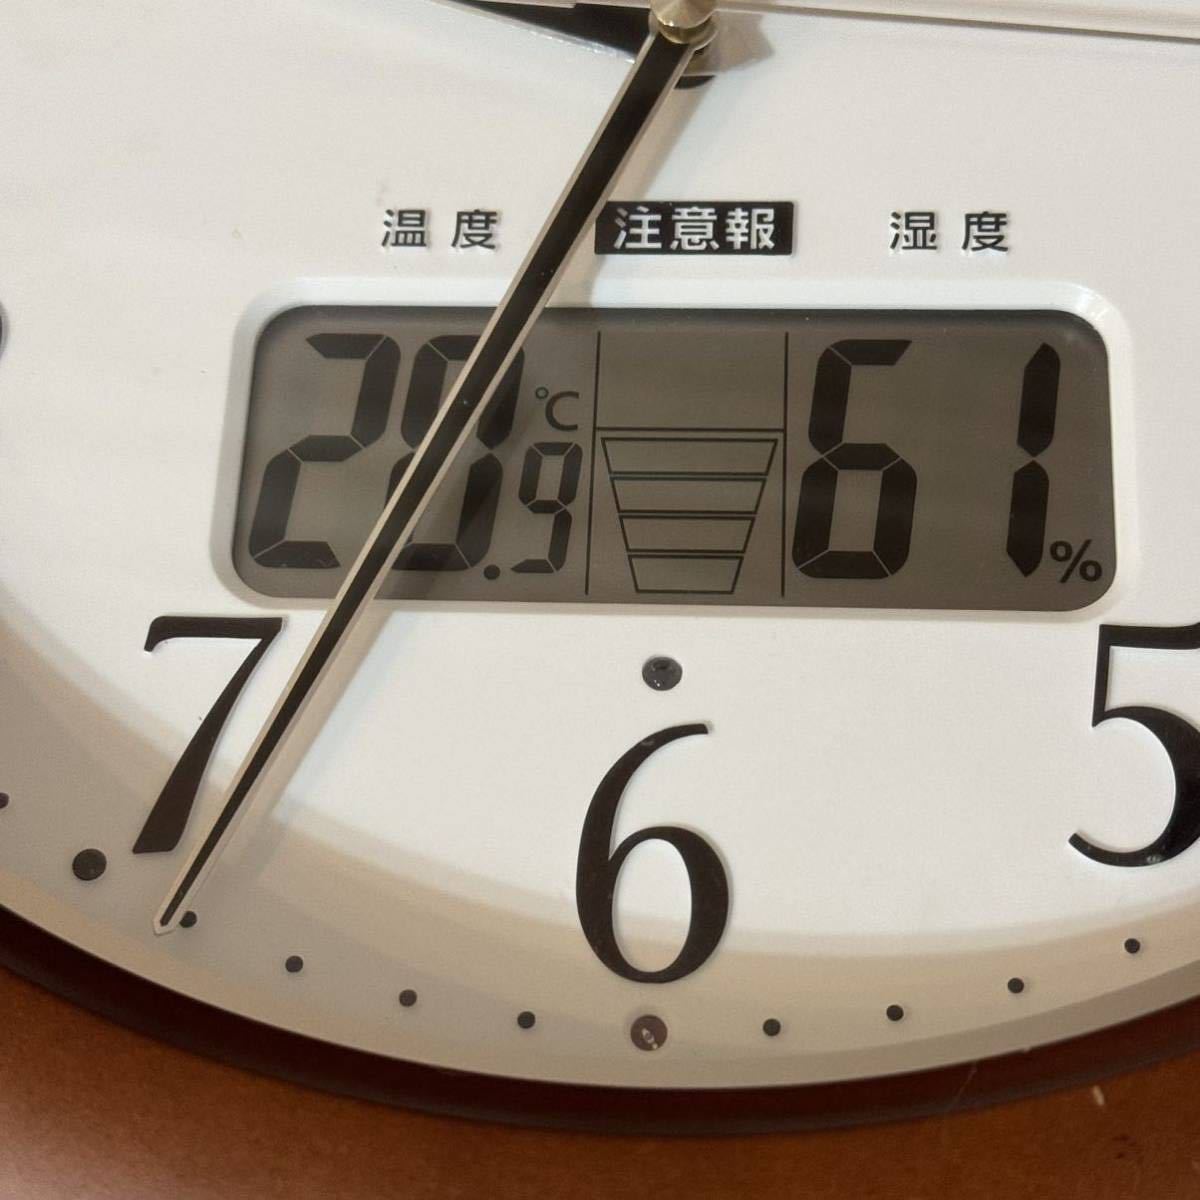 ☆CITIZEN シチズン☆壁掛け時計 電波時計 アナログ インフォームナビW 温度 湿度 カレンダー 表示 茶 CITIZEN 4FY619-0 T2255G☆_画像4